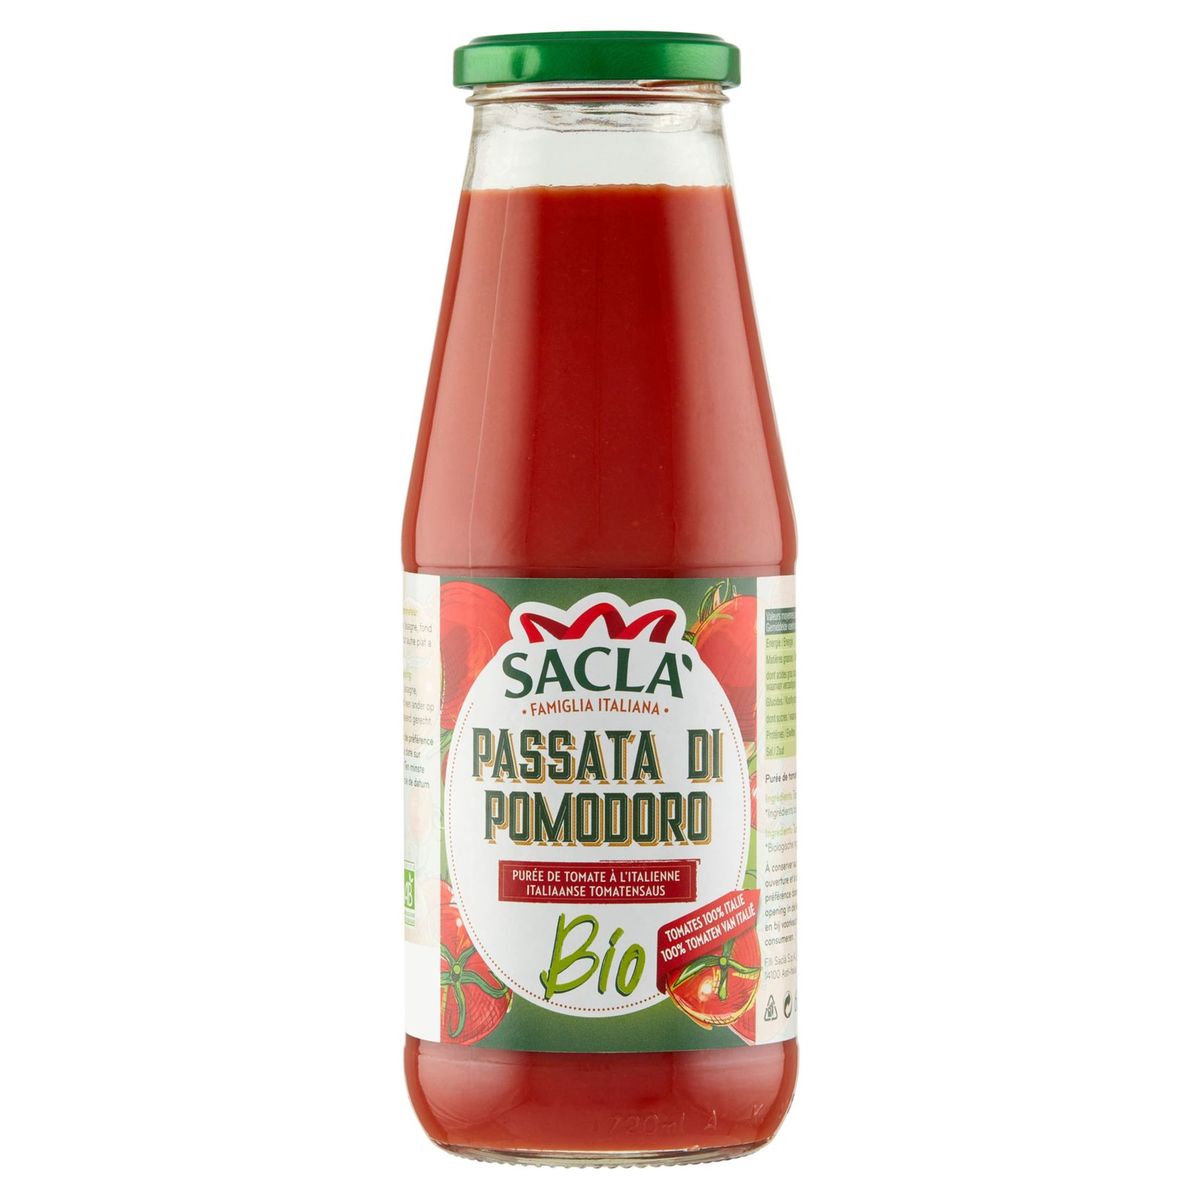 Sacla Passata di Pomodoro Purée de Tomate à l'Italienne Bio 680 g